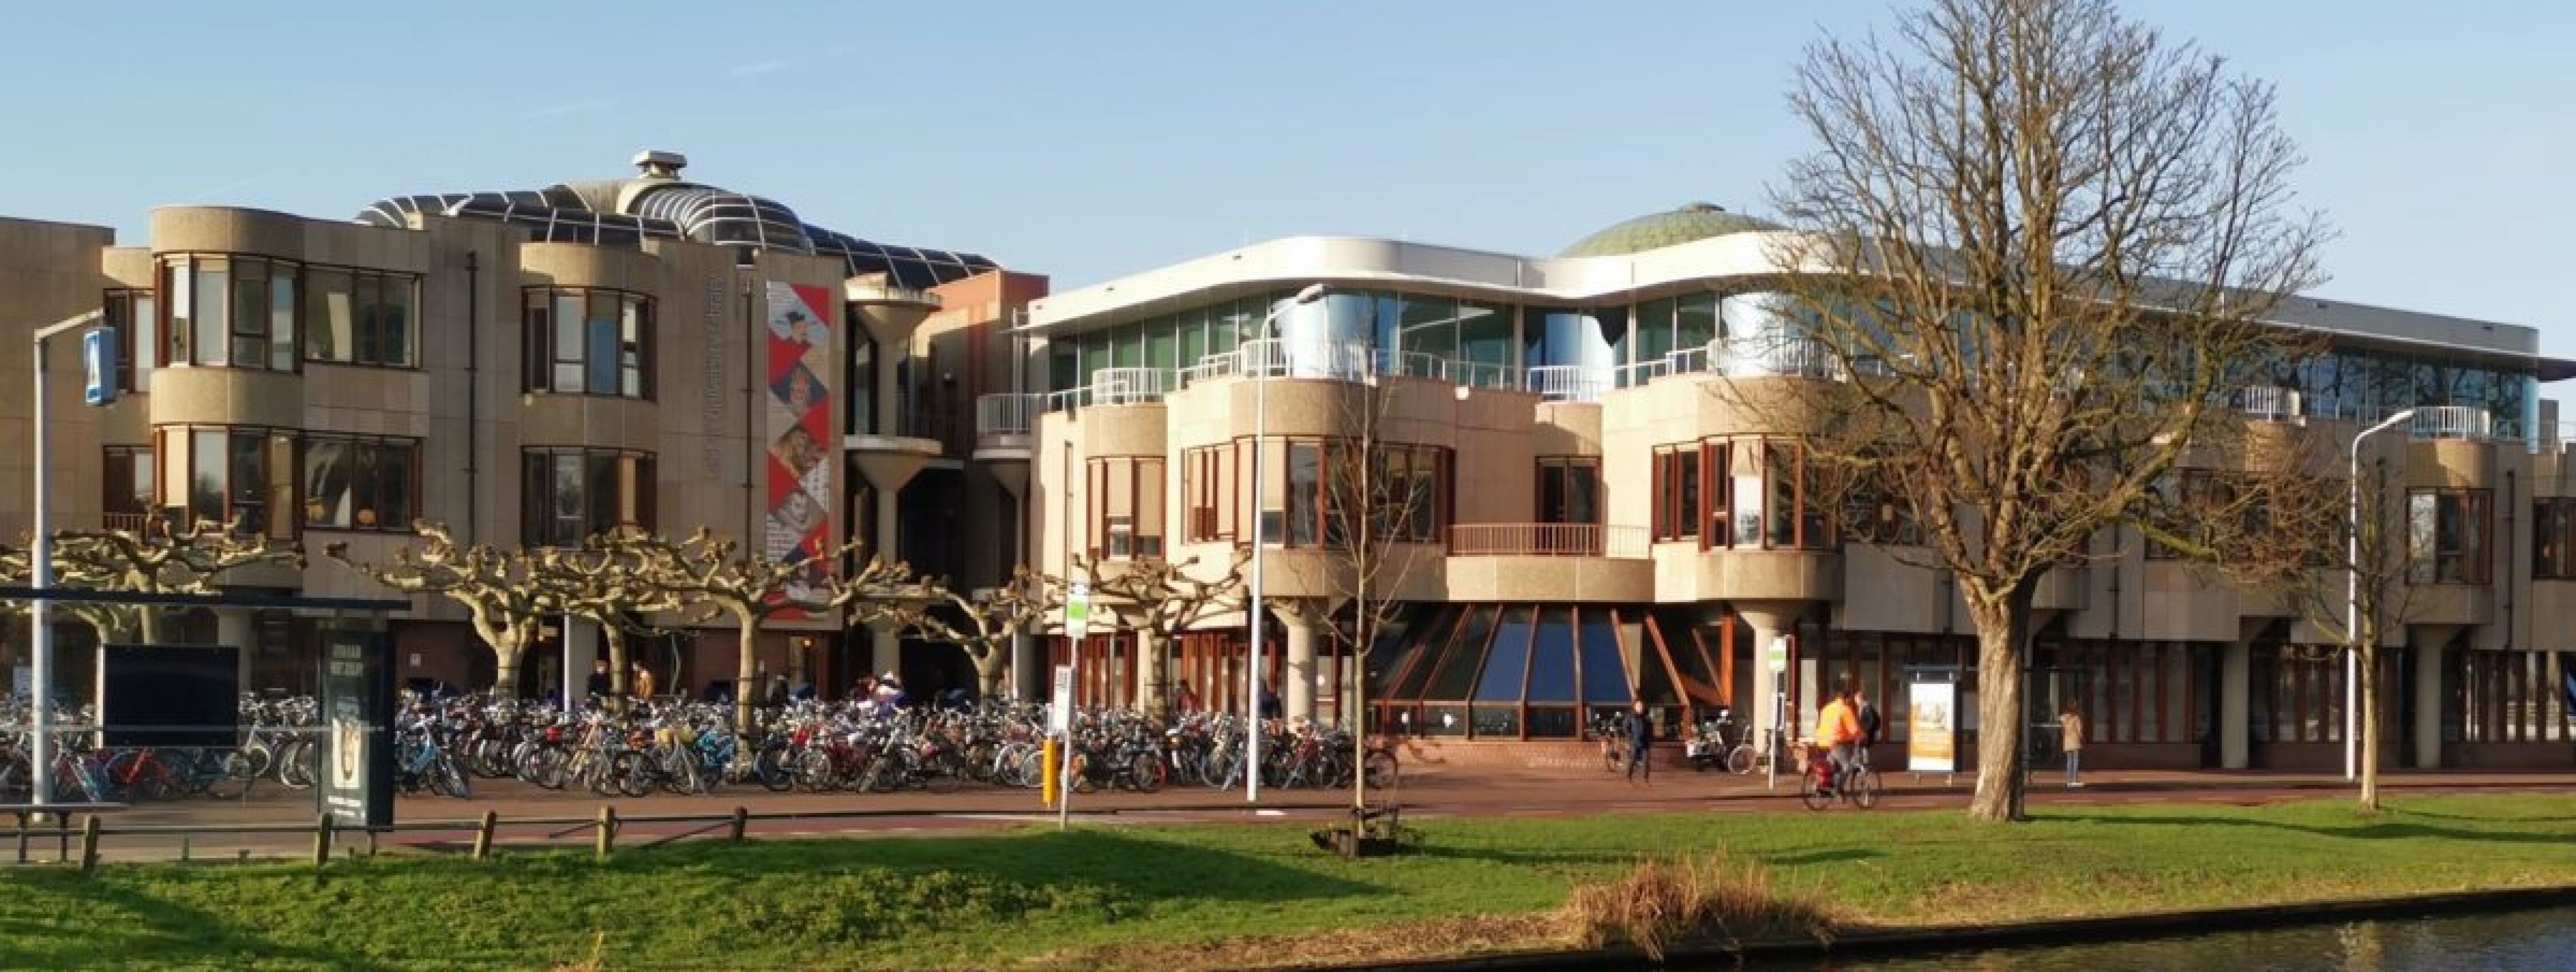 Universitätsbibliothek Leiden